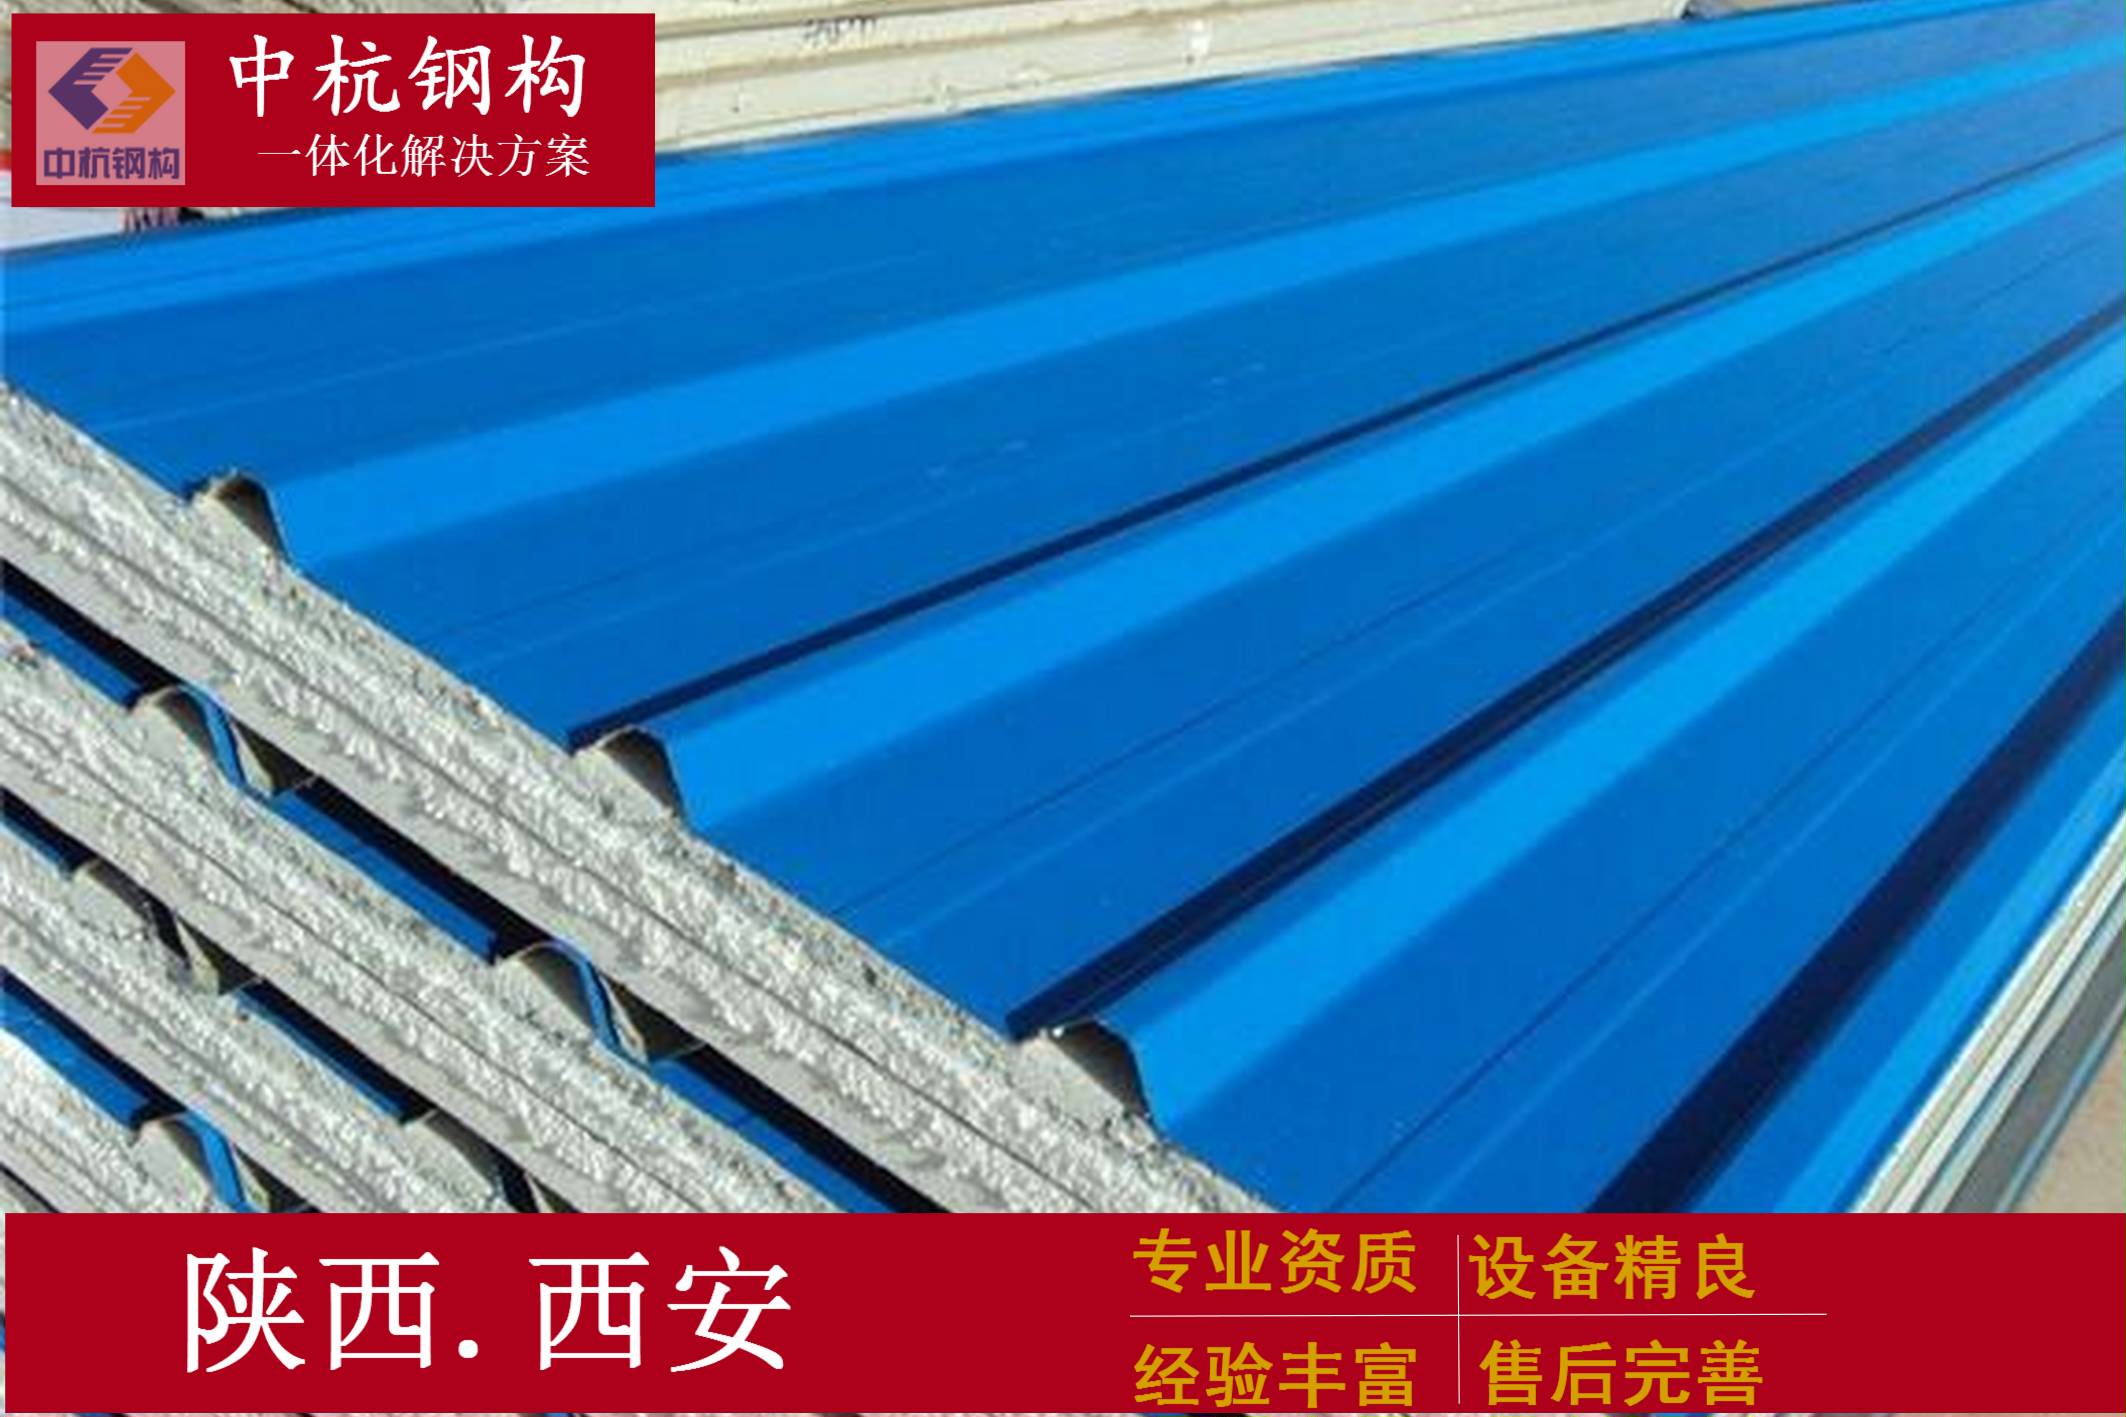 武汉彩钢瓦840型和900型 - 武汉山峰彩钢结构工程有限公司,武汉岩棉板生产厂家,武汉彩钢板厂家